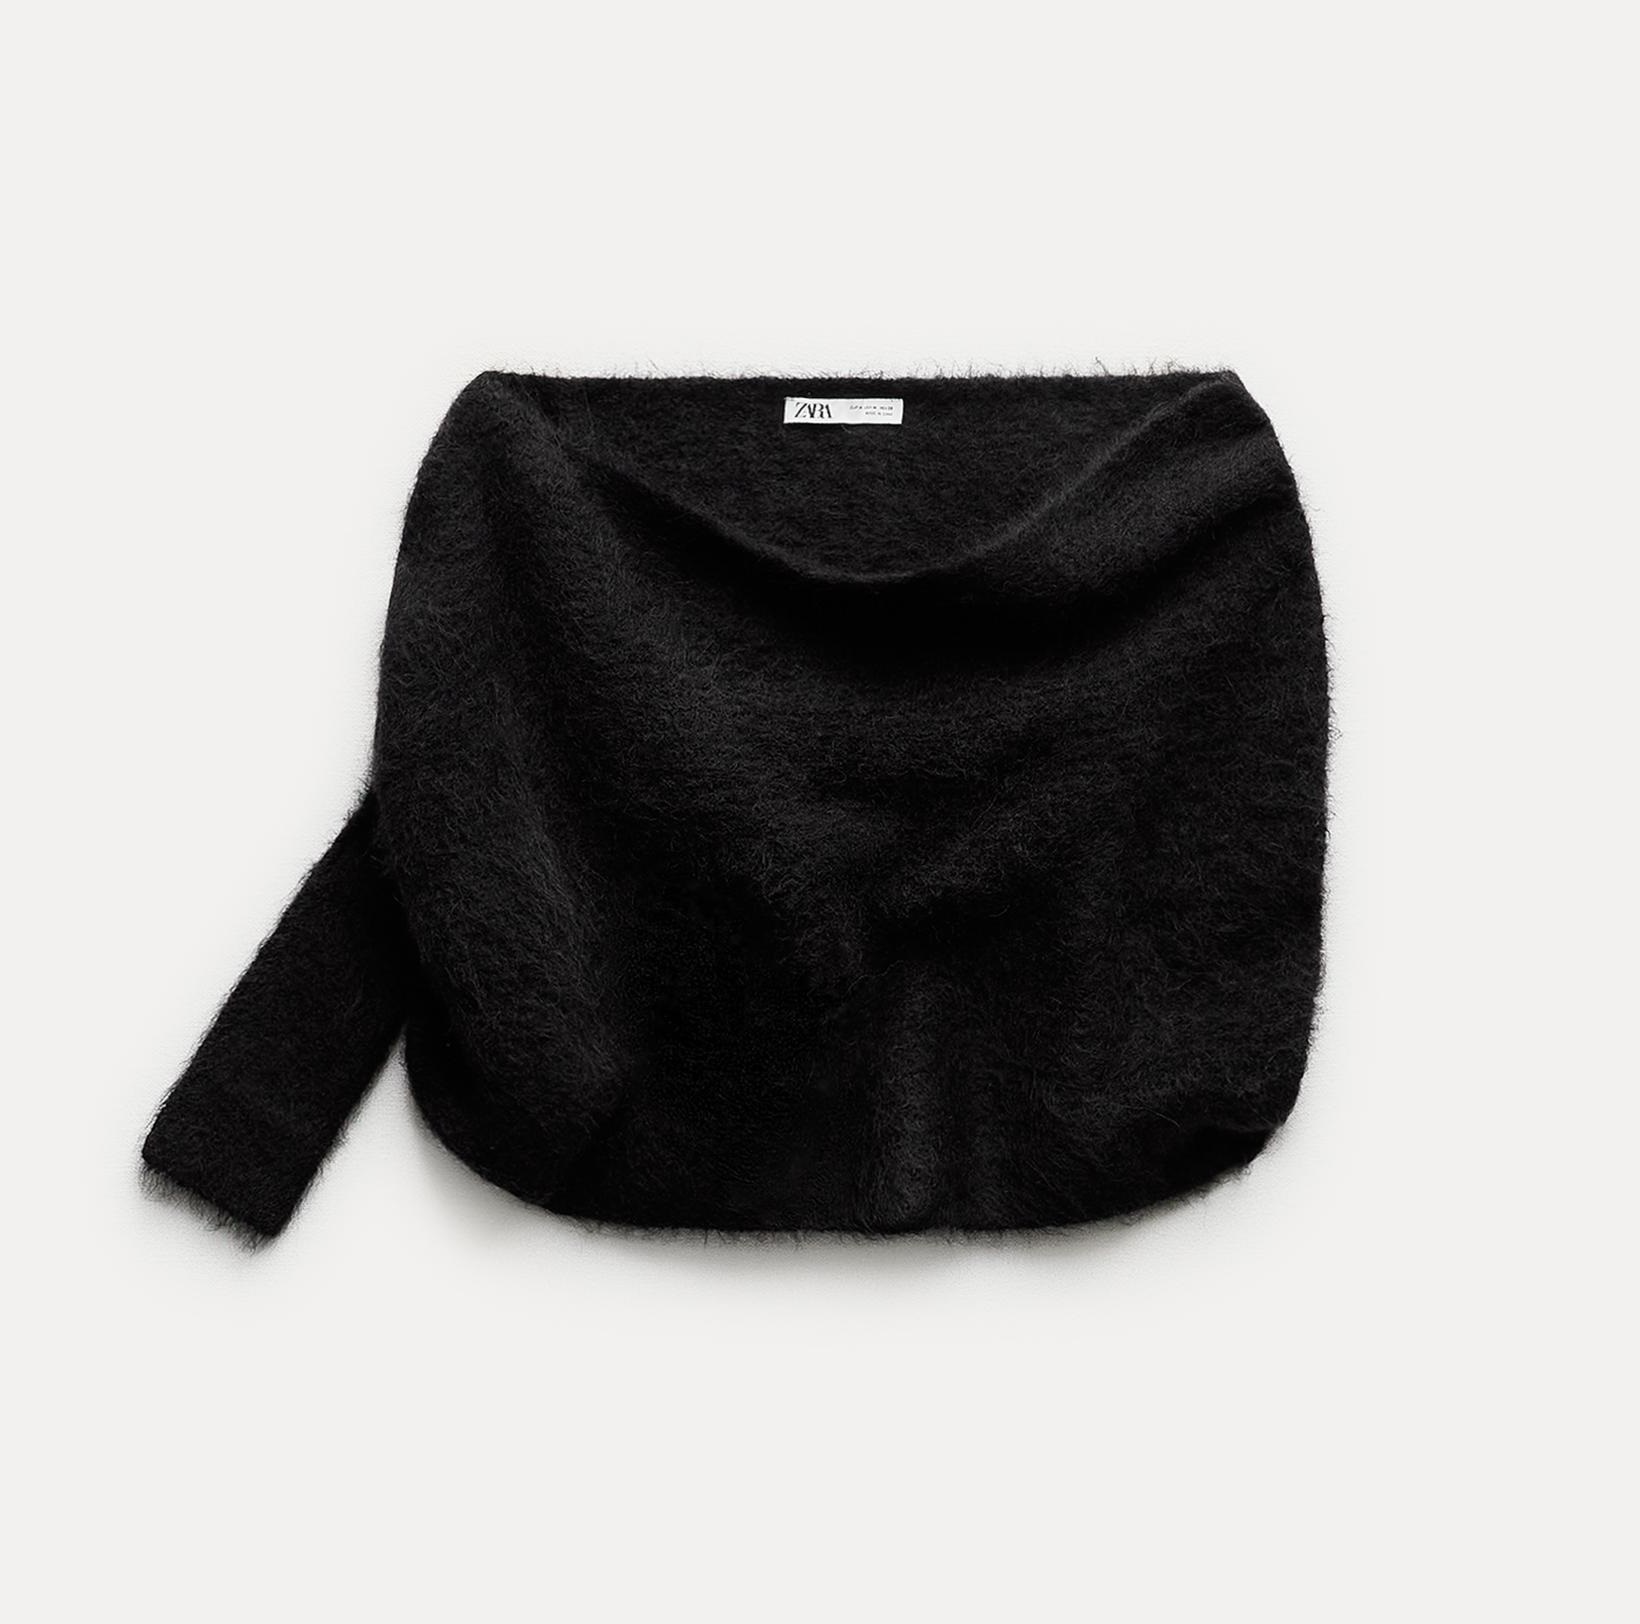 Джемпер Zara Alpaca Blend Asymmetric Knit Bolero Cape, черный накидка болеро doris streich из вискозы 50 размер